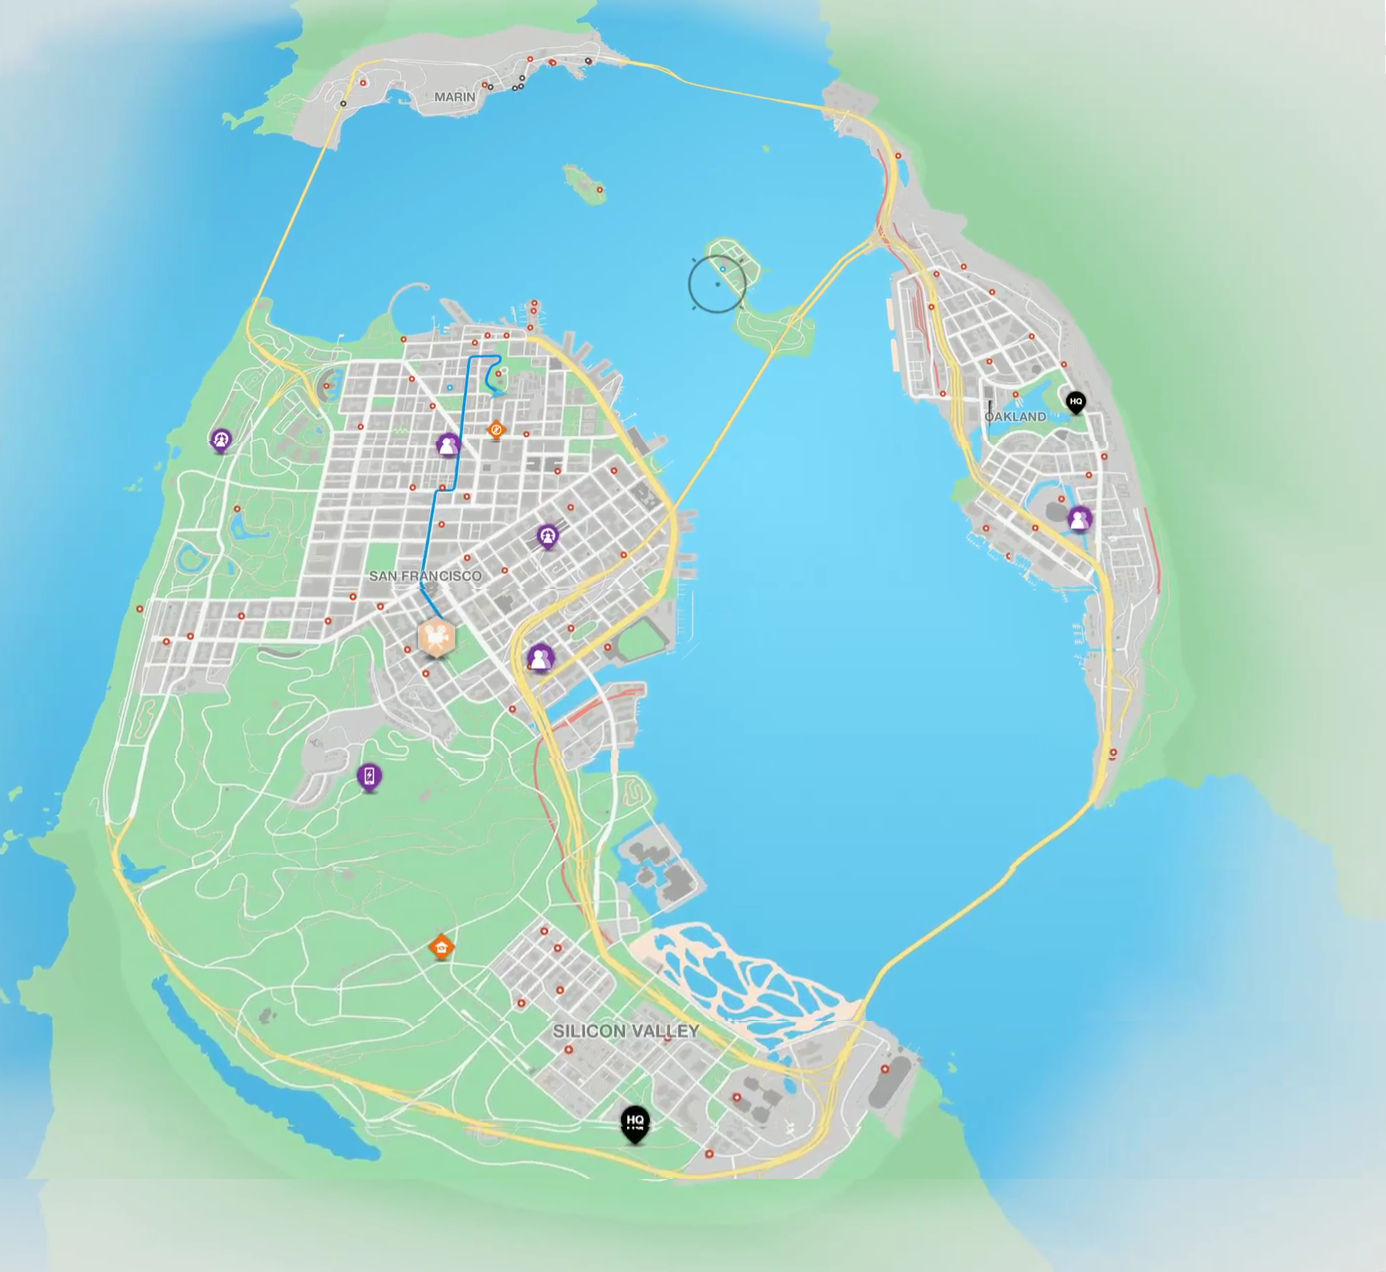 Comparação: Mapa do GTA V vs. GTA San Andreas - GTA 5